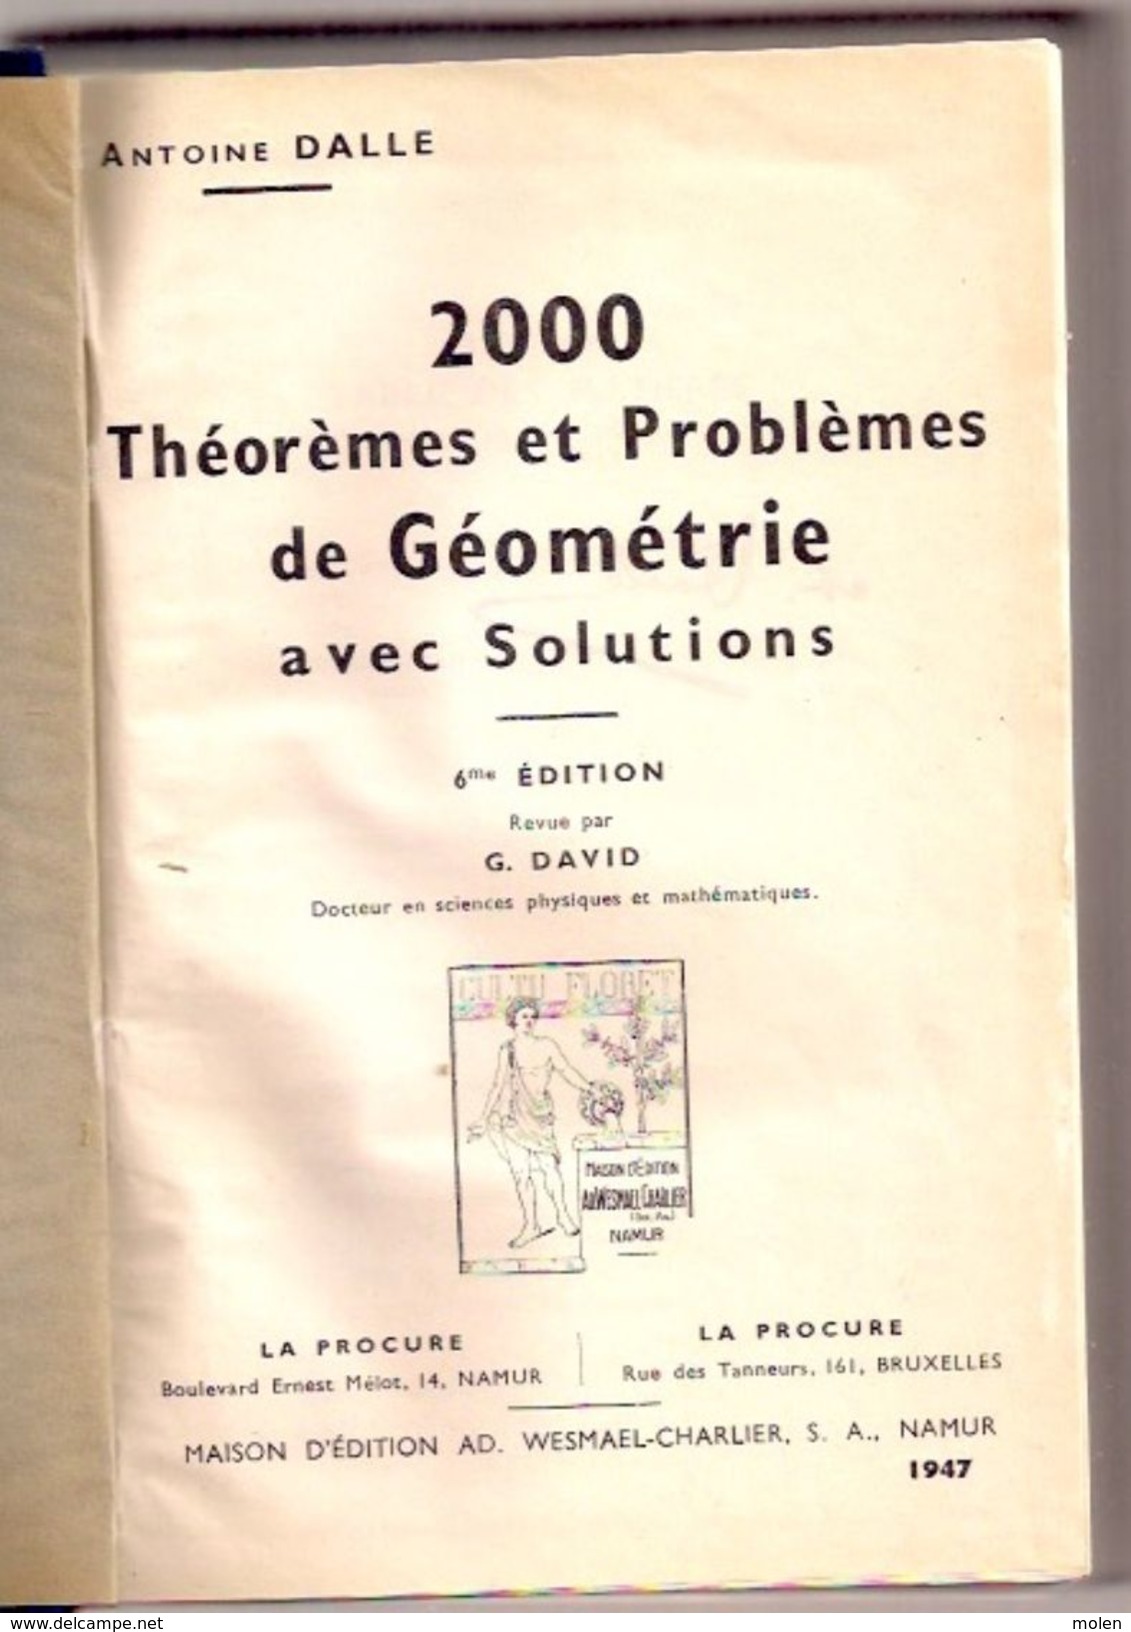 2000 Theoremes Et Problemes De GEOMETRIE Avec Solutions 1053pg ©1947 A Dalle Physiques Mathematiques MEETKUNDE Z704 - Ciencia